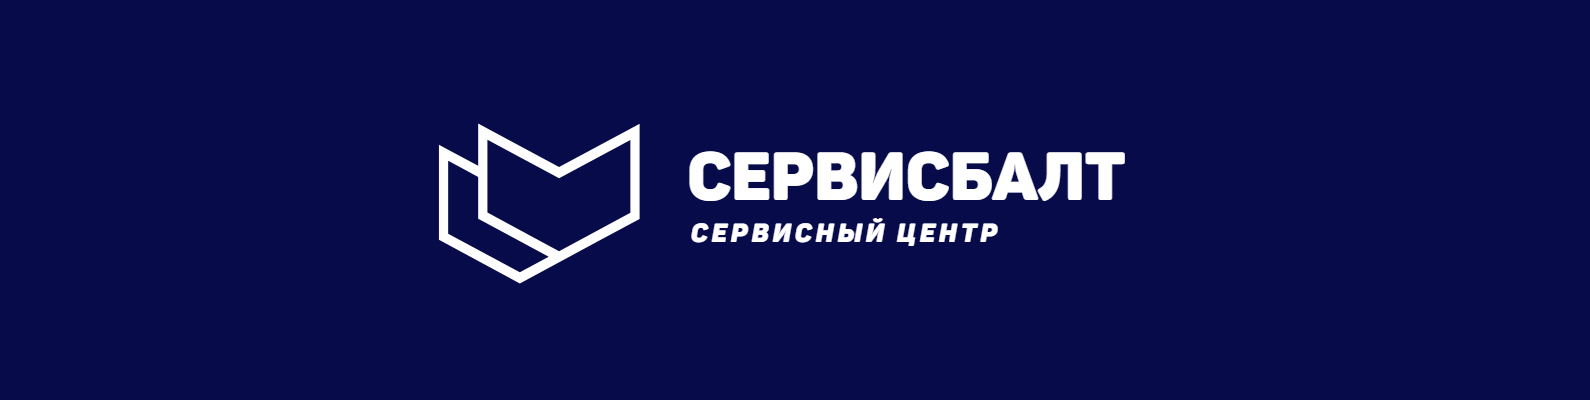 СервисБалт - прокат, аренда, ремонт инструмента и оборудования в Гурьевске